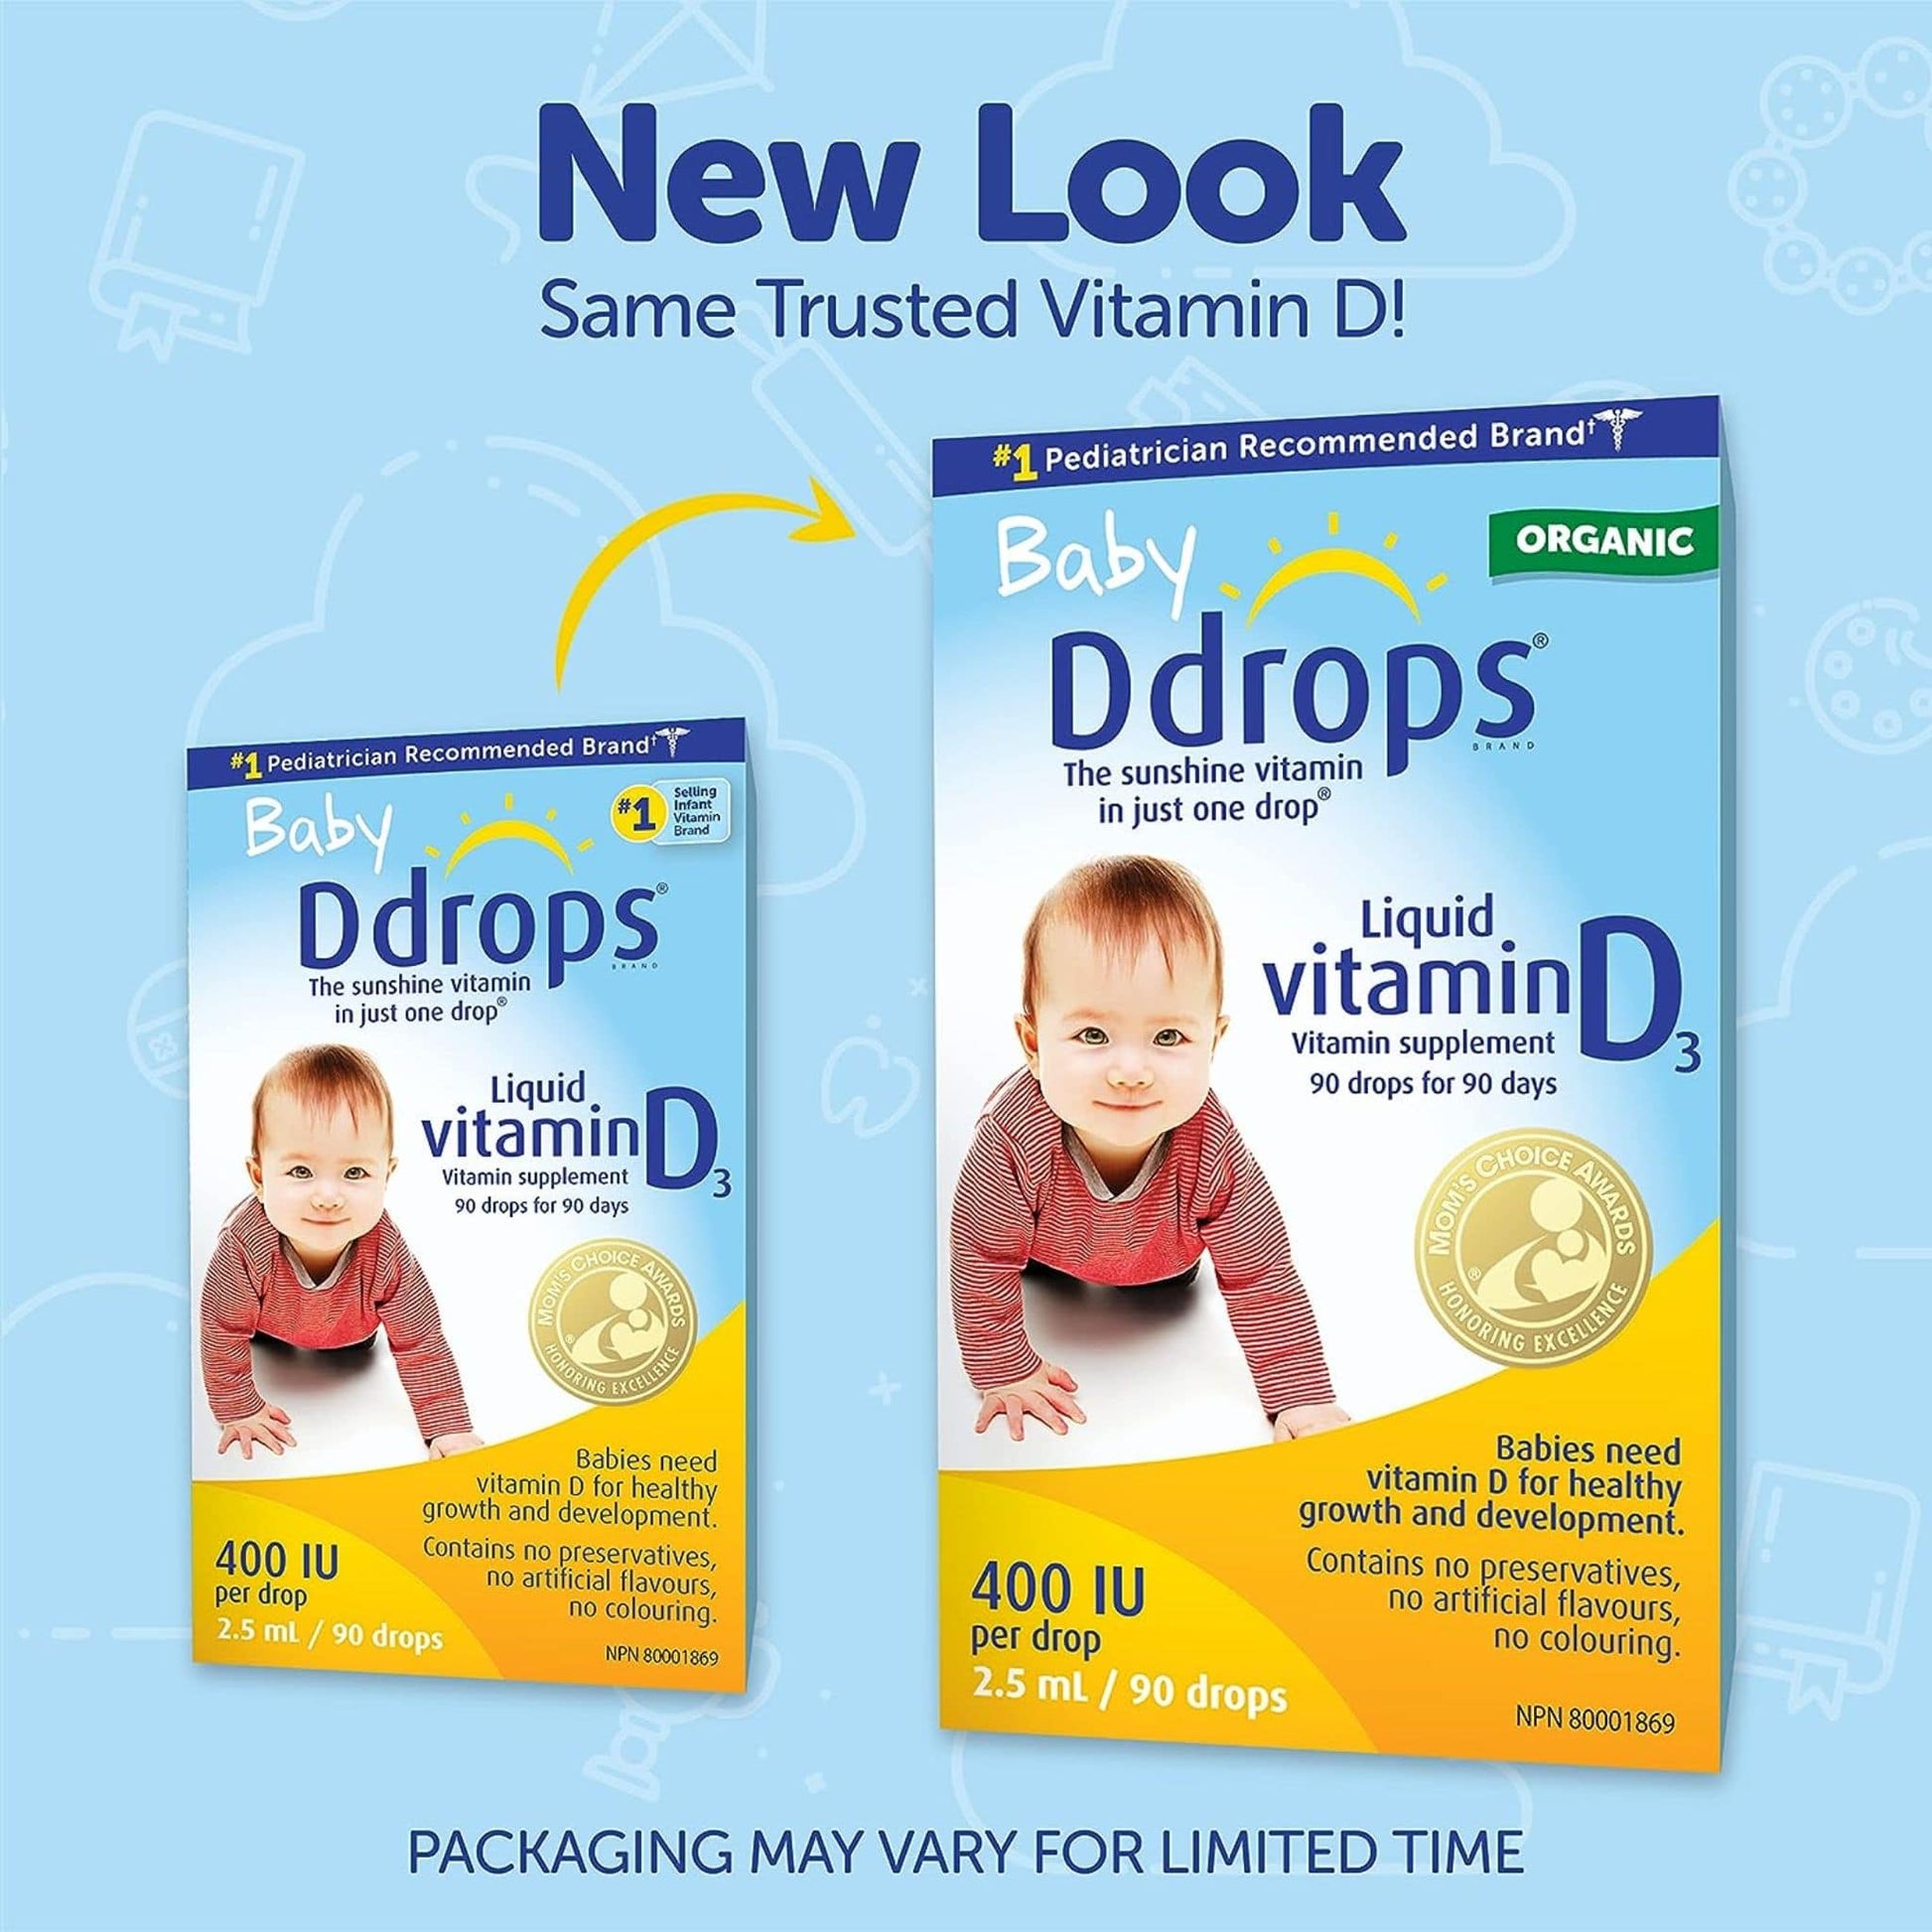 Ddrop Baby Liquid Vitamin D3 400IU